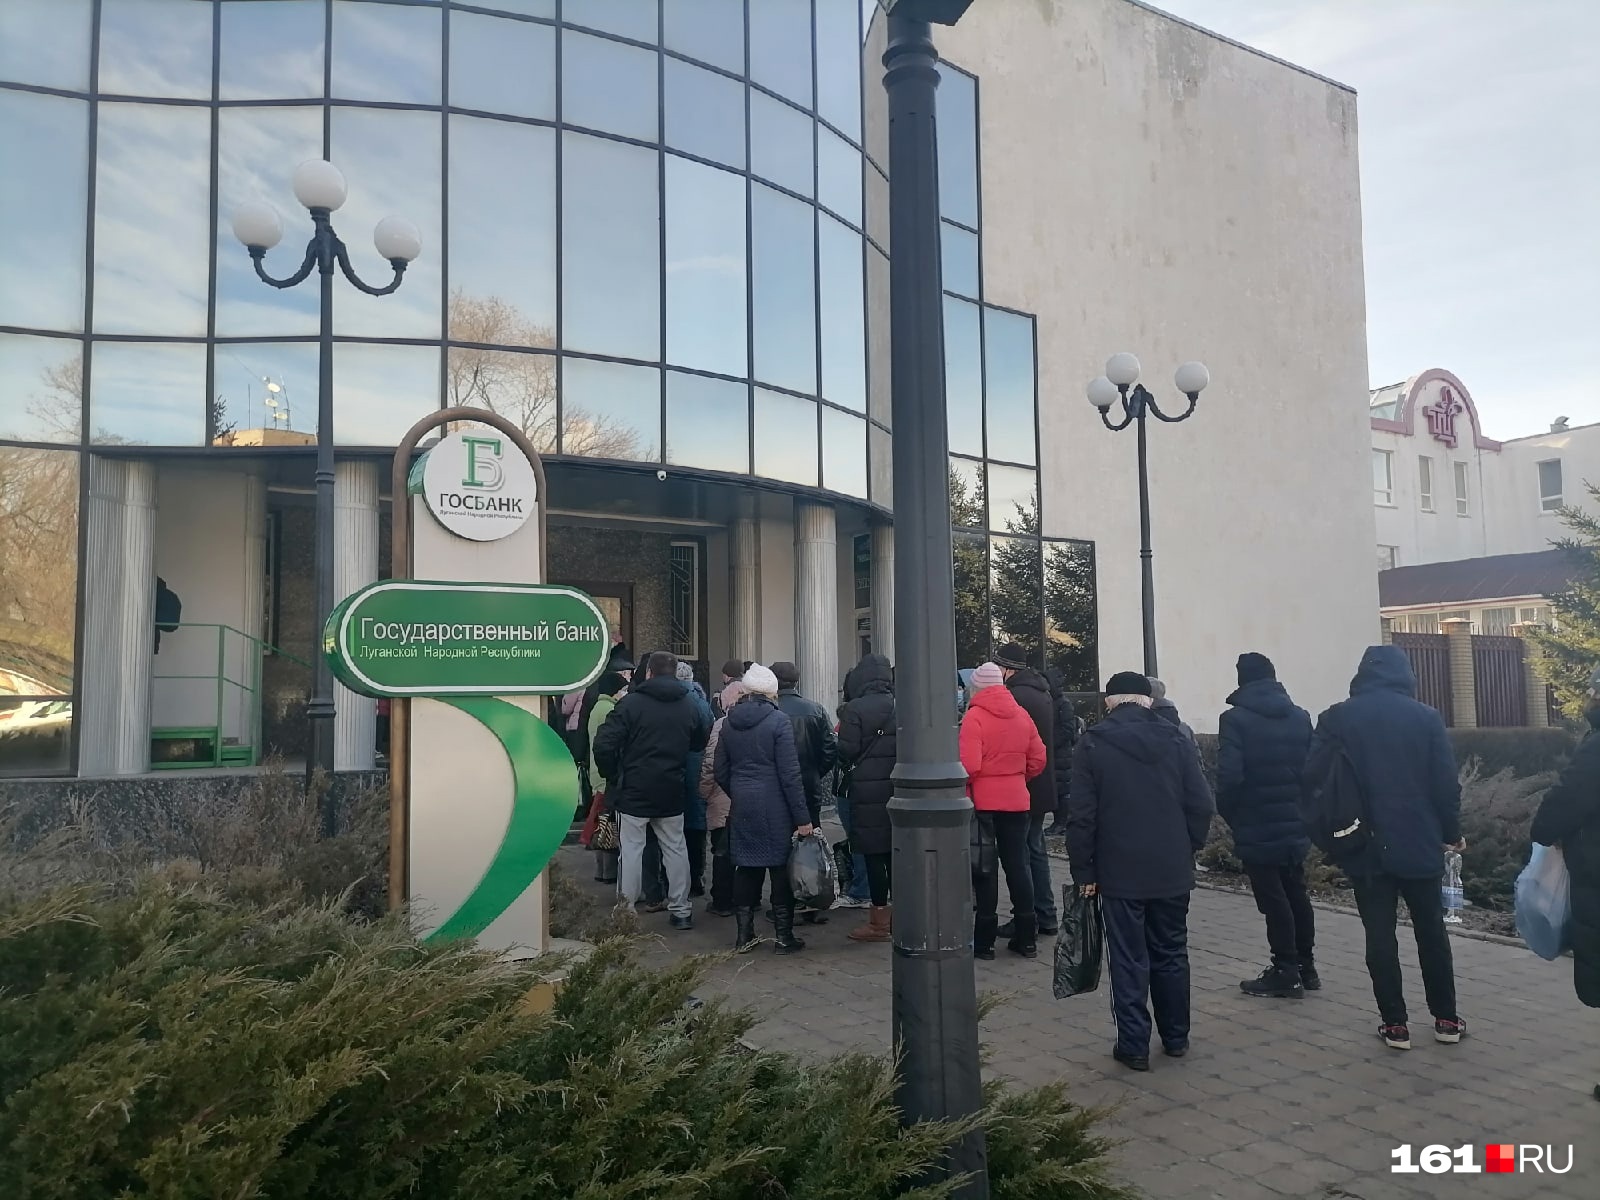 Очереди у банкоматов и на заправках: что происходит в пустеющем Луганске